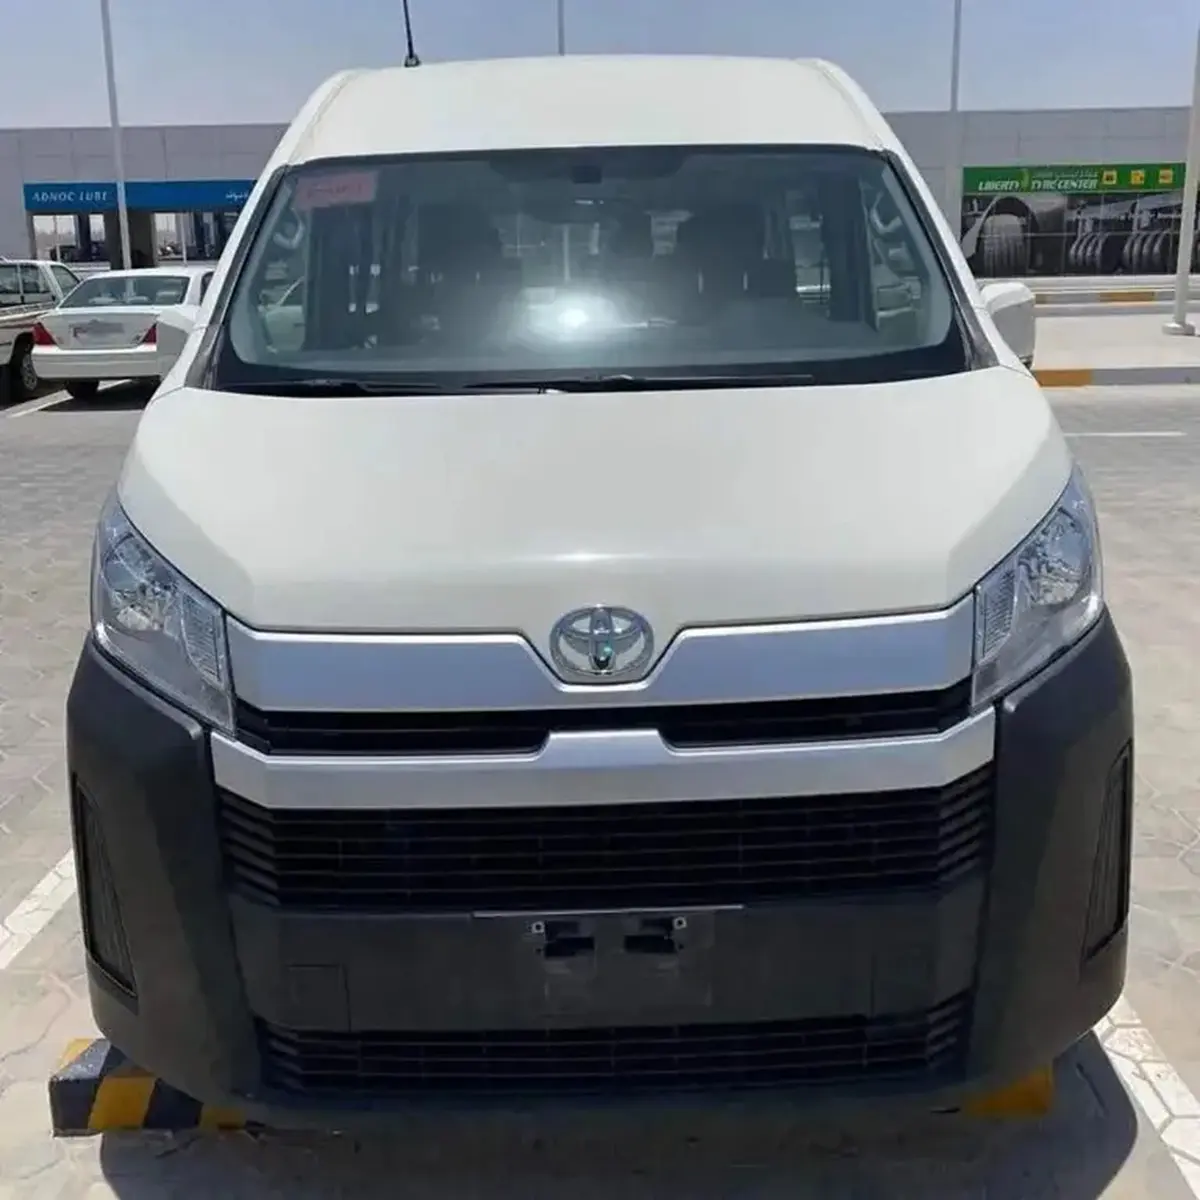 Usato 2019 Toyotas Hiace 15 posti Minivan